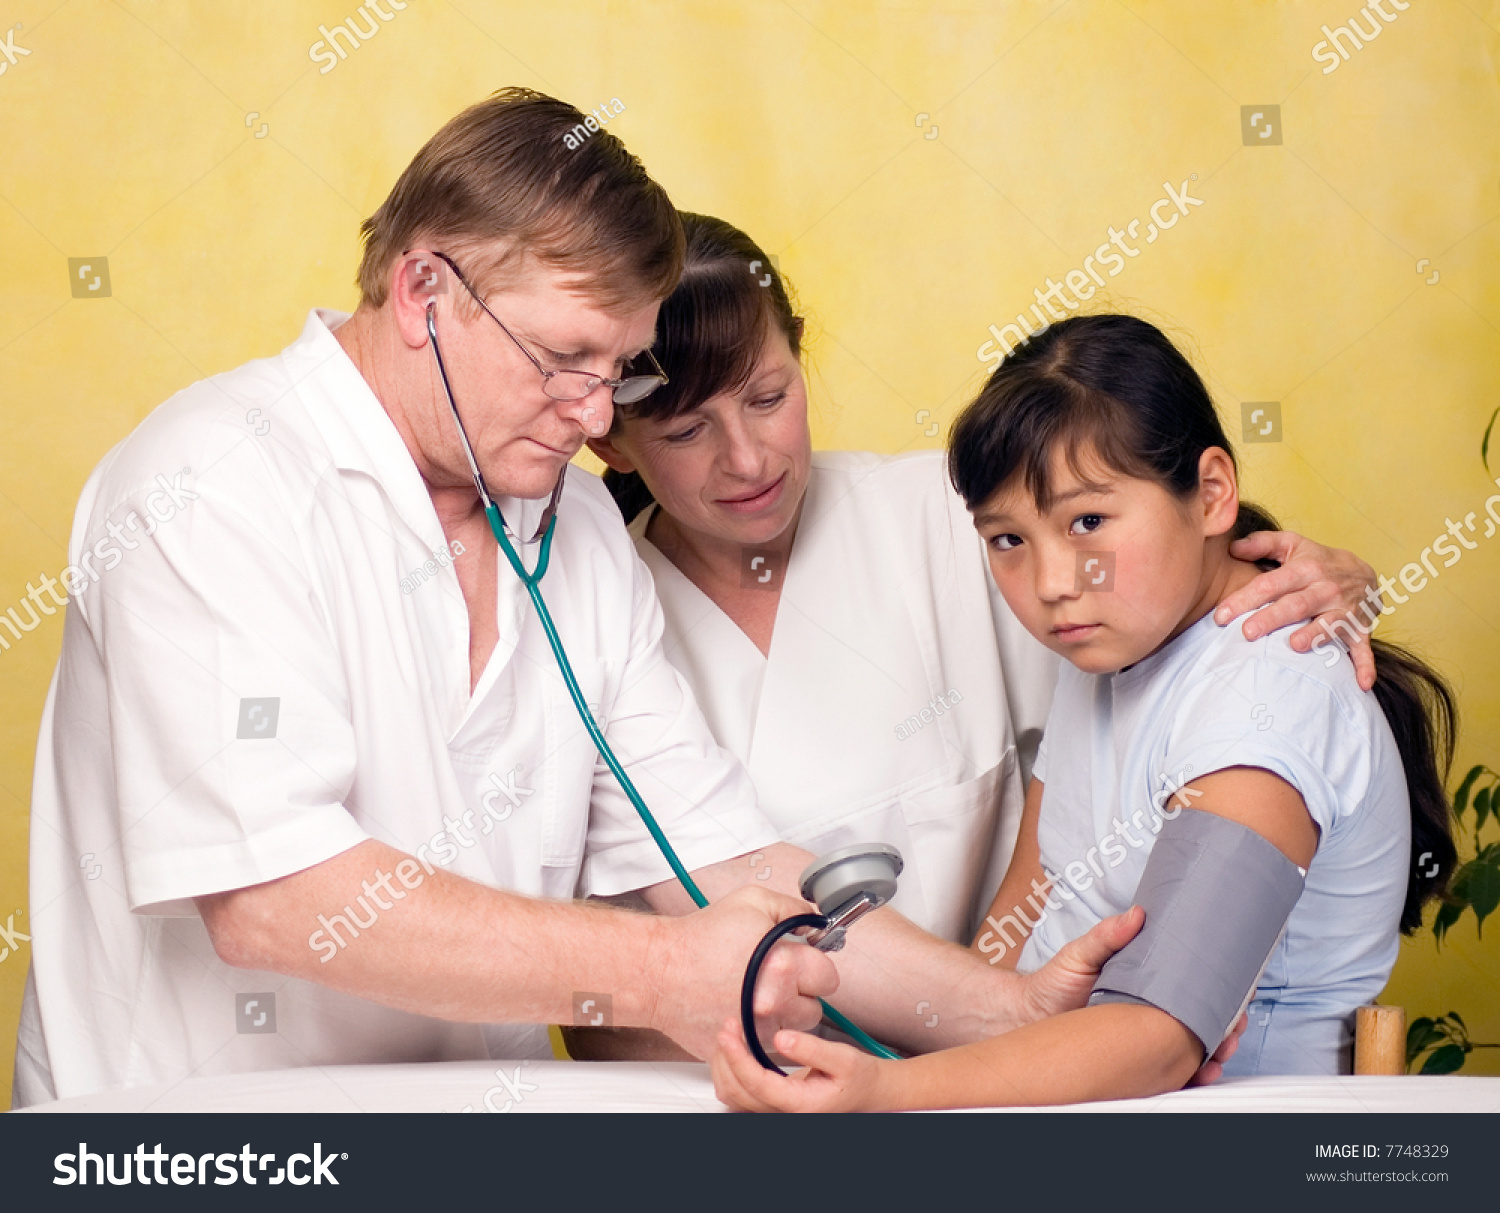 Medical Examination Of Child. Stock Photo - Image of 